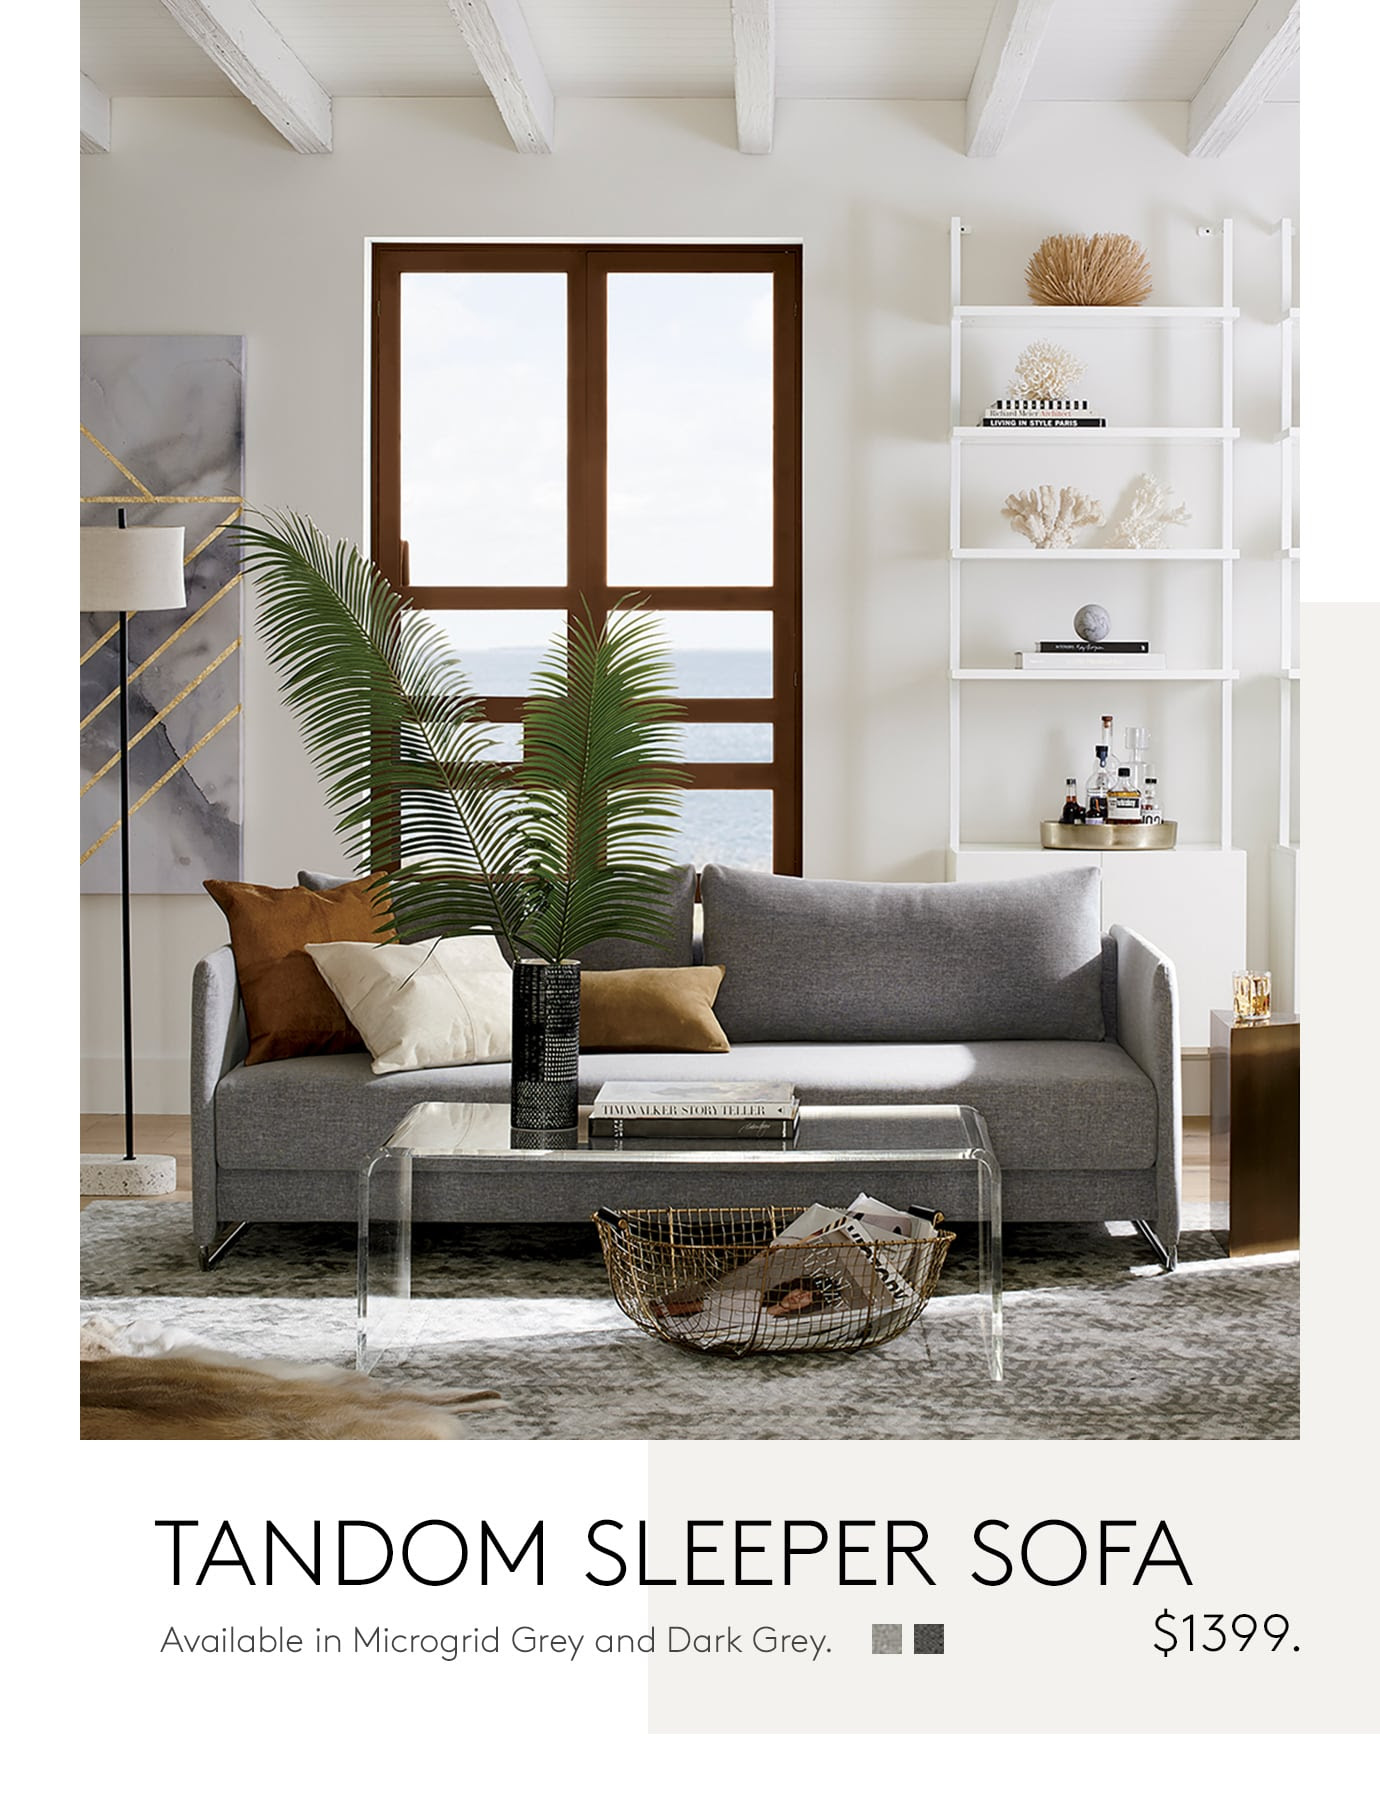 tandom sleeper sofa